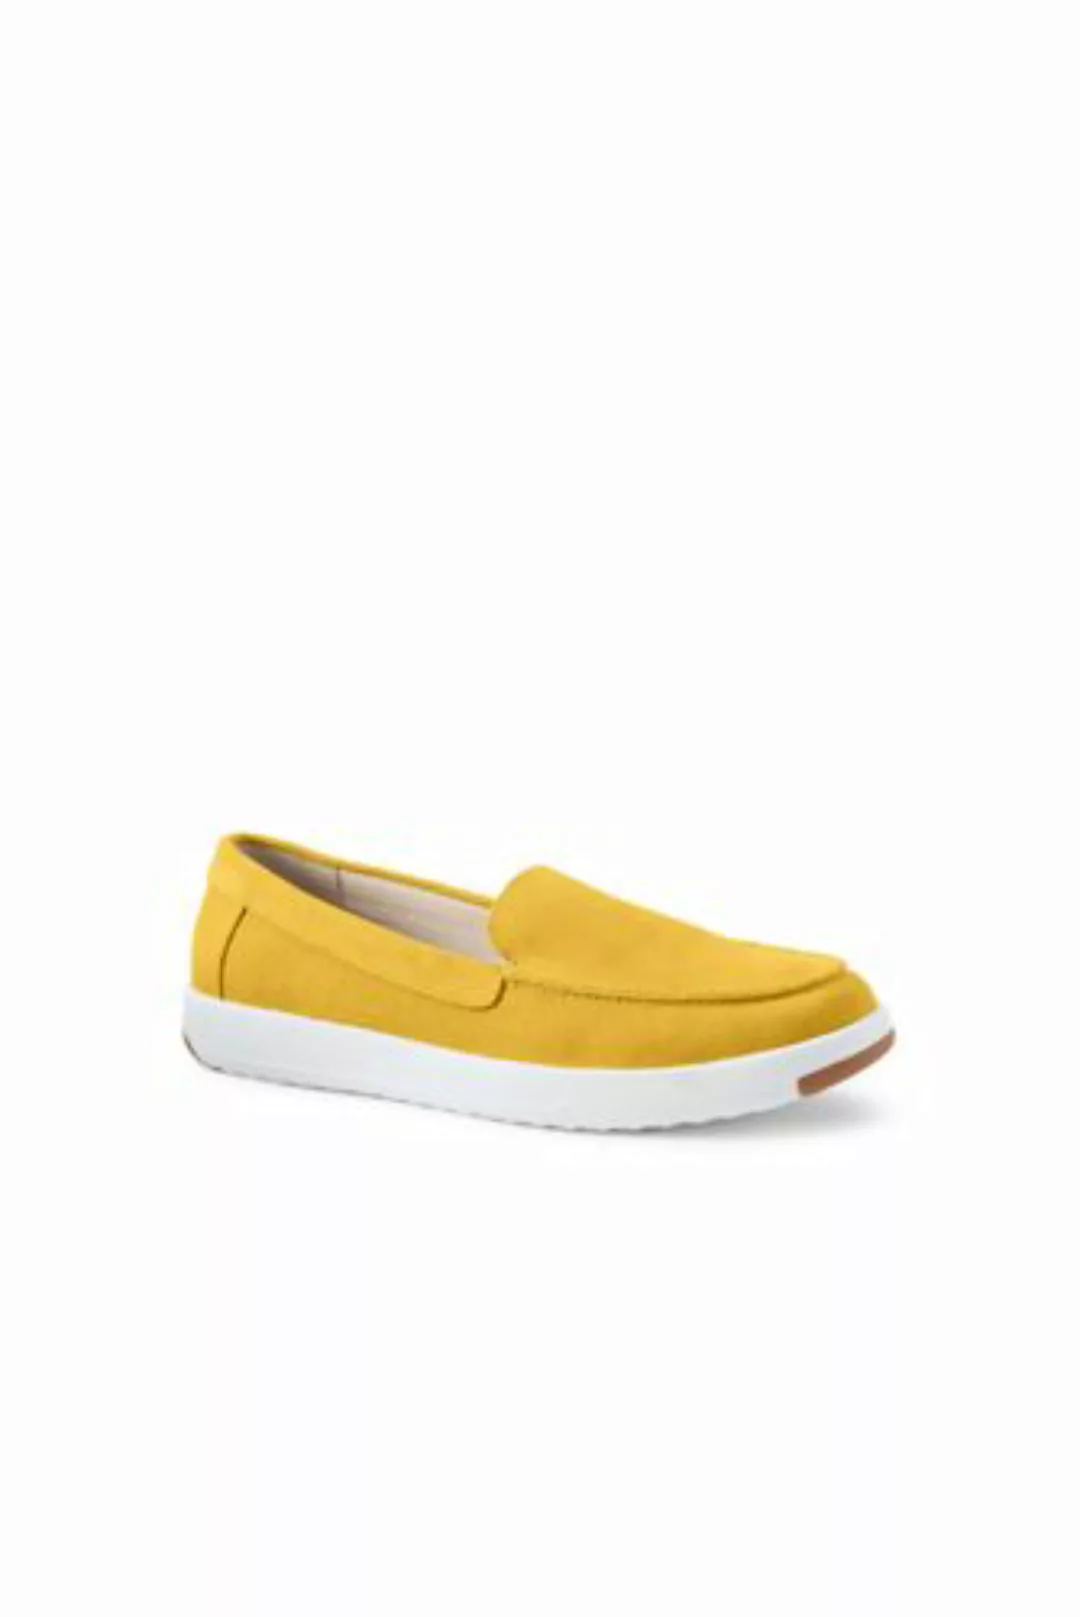 Federleichte Komfort-Loafer, Damen, Größe: 38.5 Weit, Gelb, Rauleder, by La günstig online kaufen